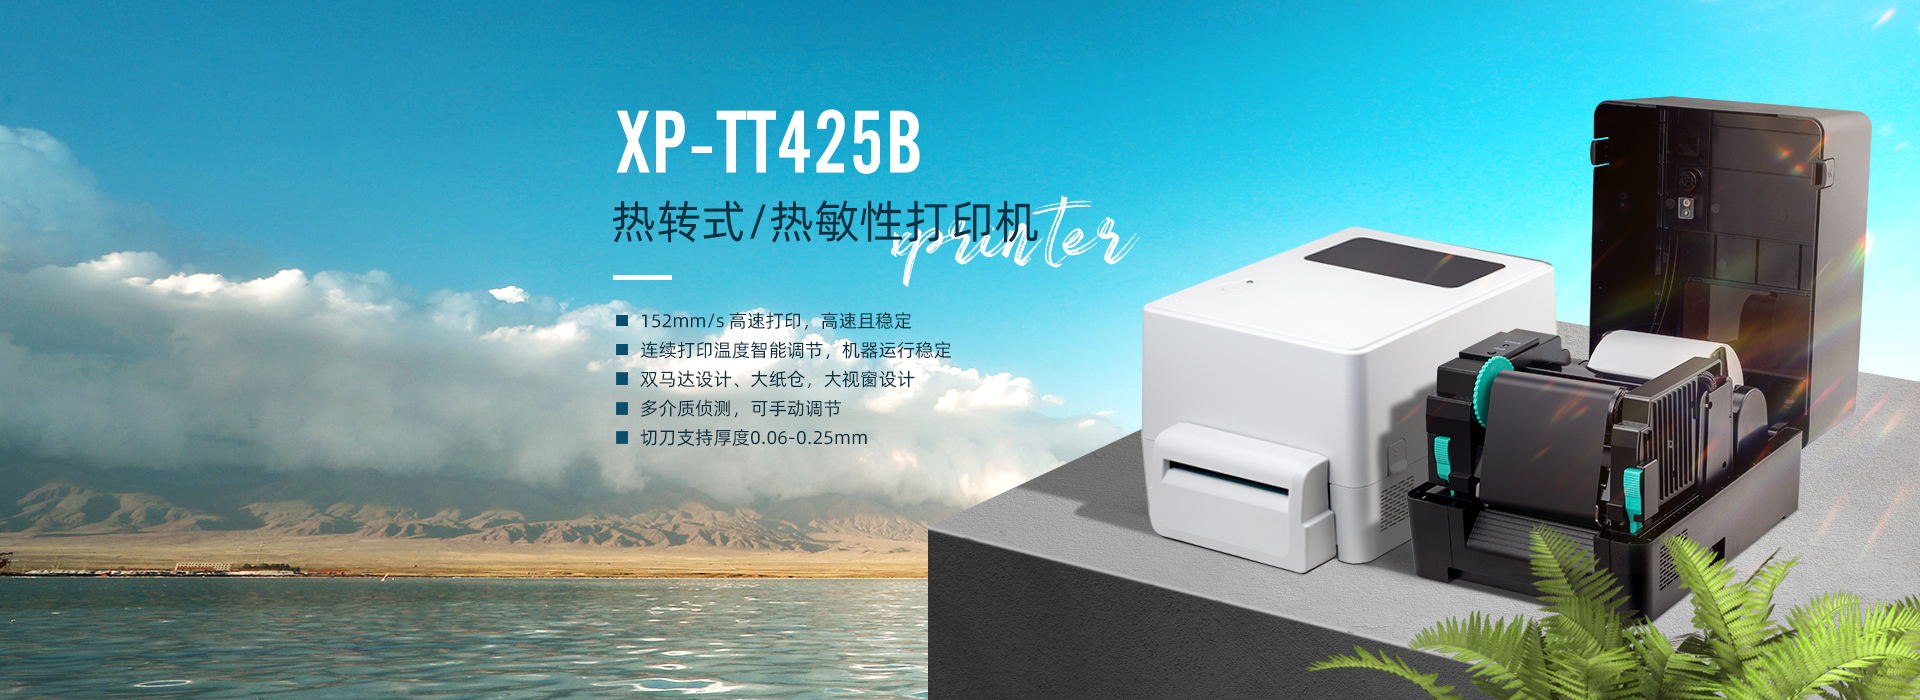 XP-TT425B熱轉式/熱敏性打印機